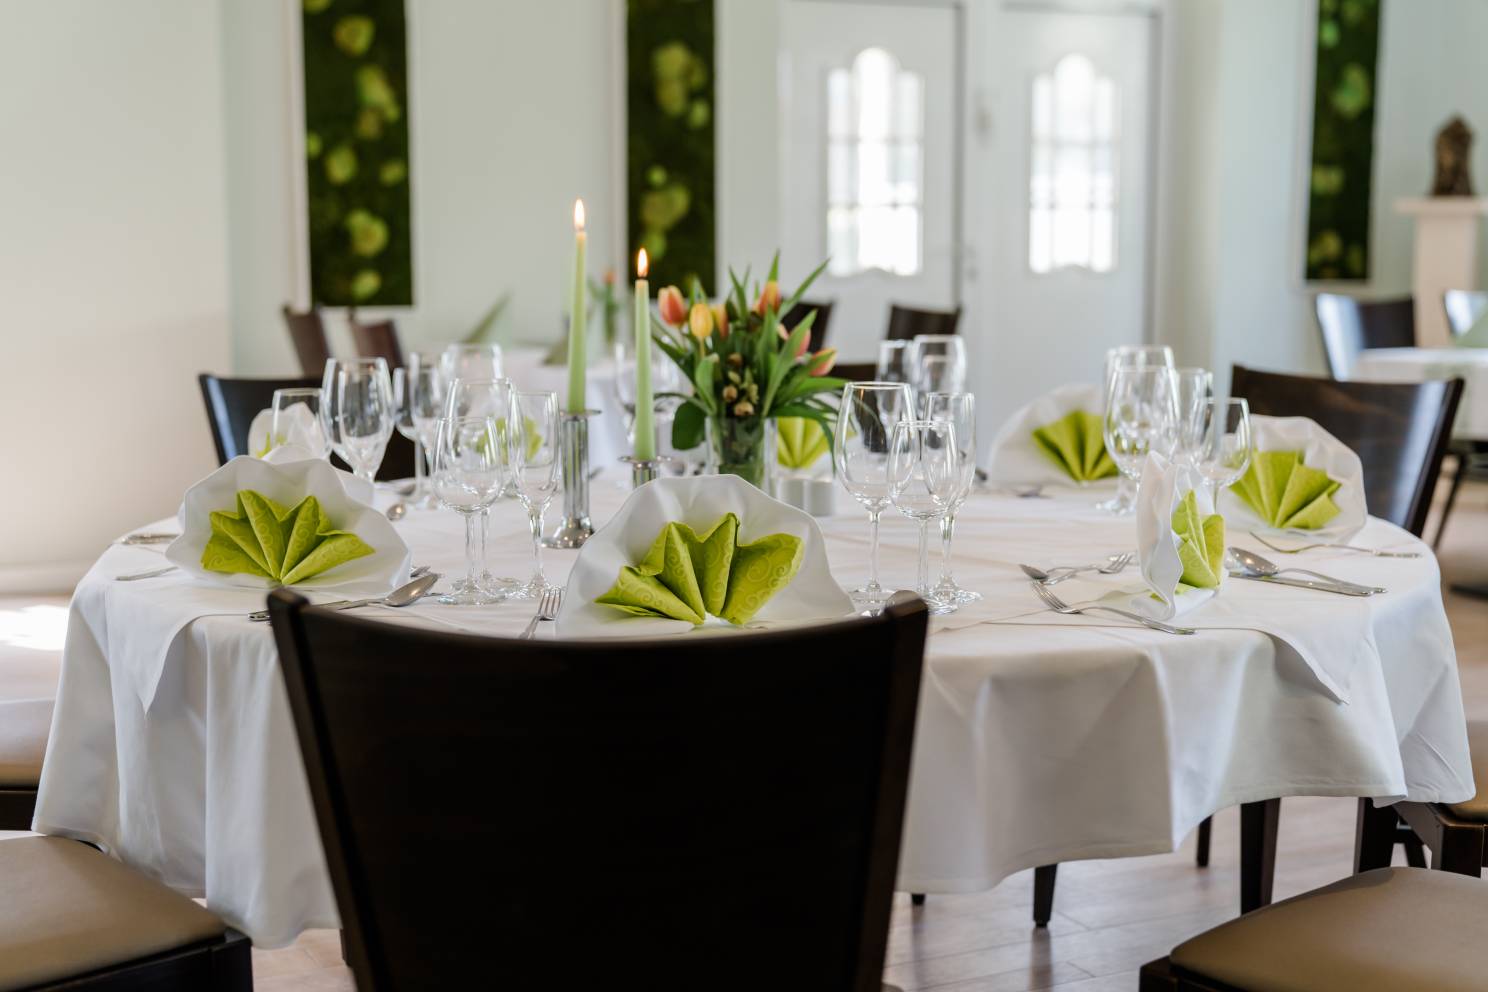 runder Tisch mit dunkeln Stühlen, weiß gedeckt mit grünen Servietten, Gläser und Kerzen, Tulpenstrauß